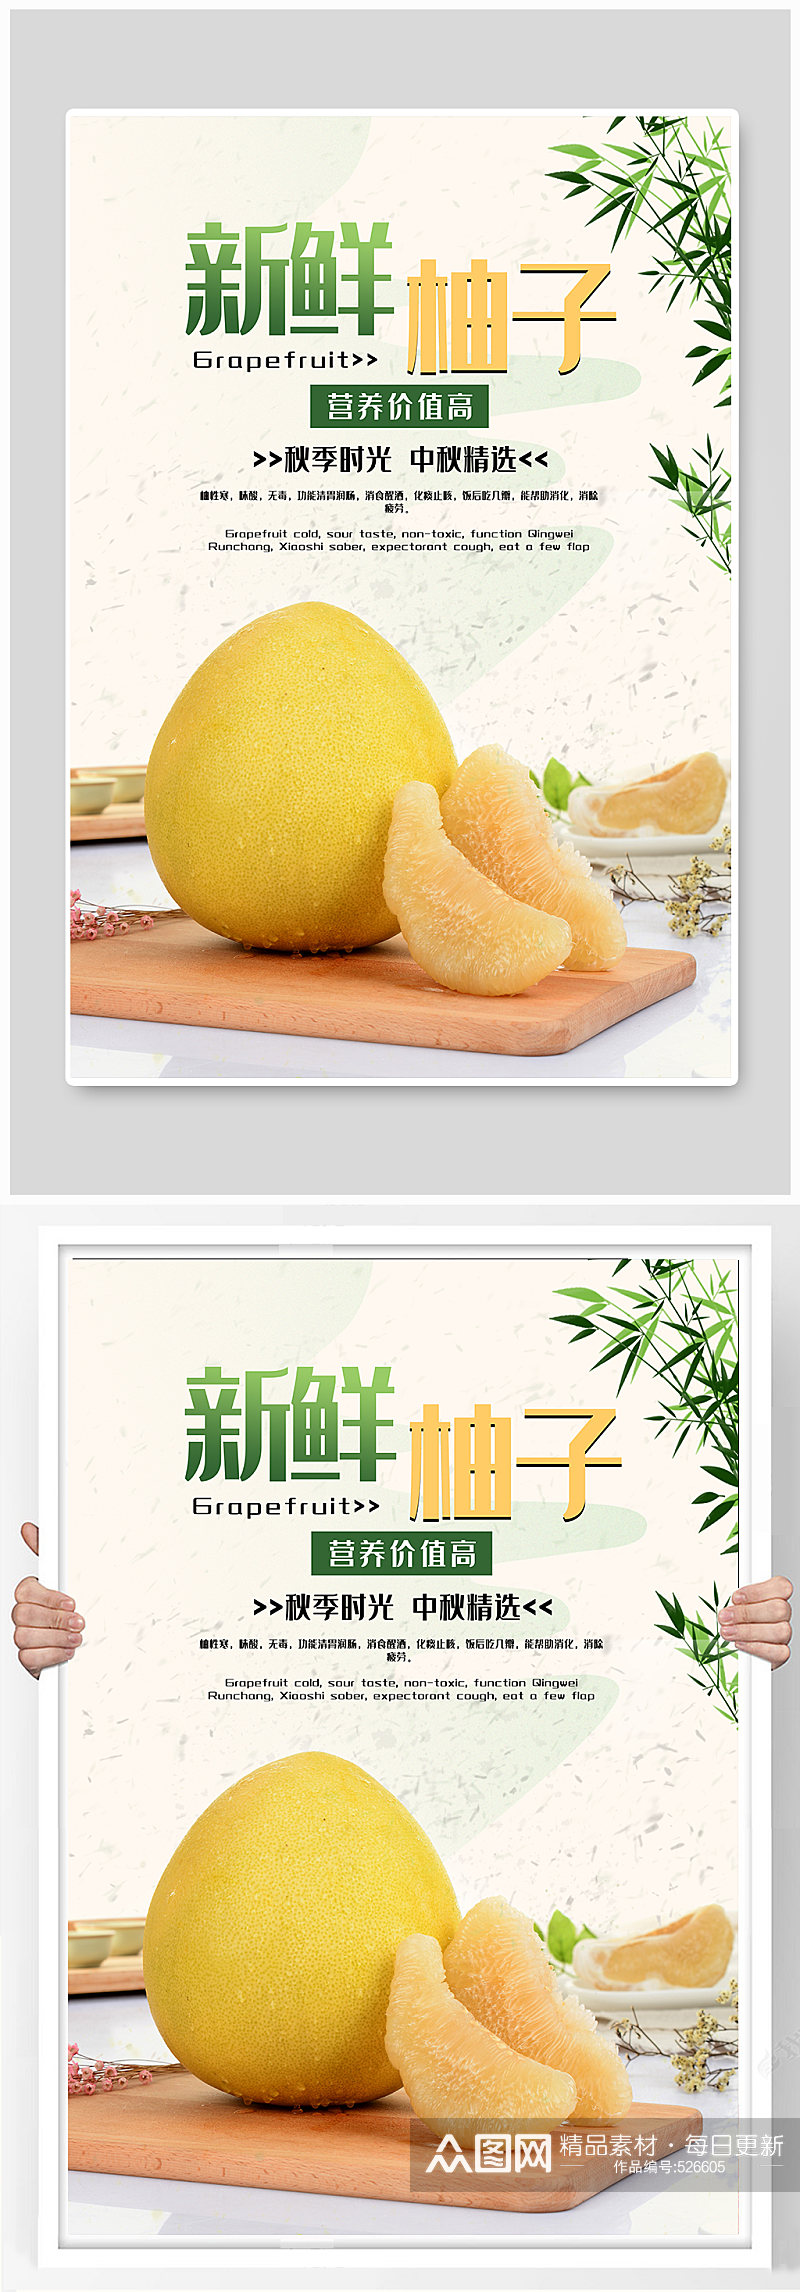 秋季柚子水果宣传海报素材